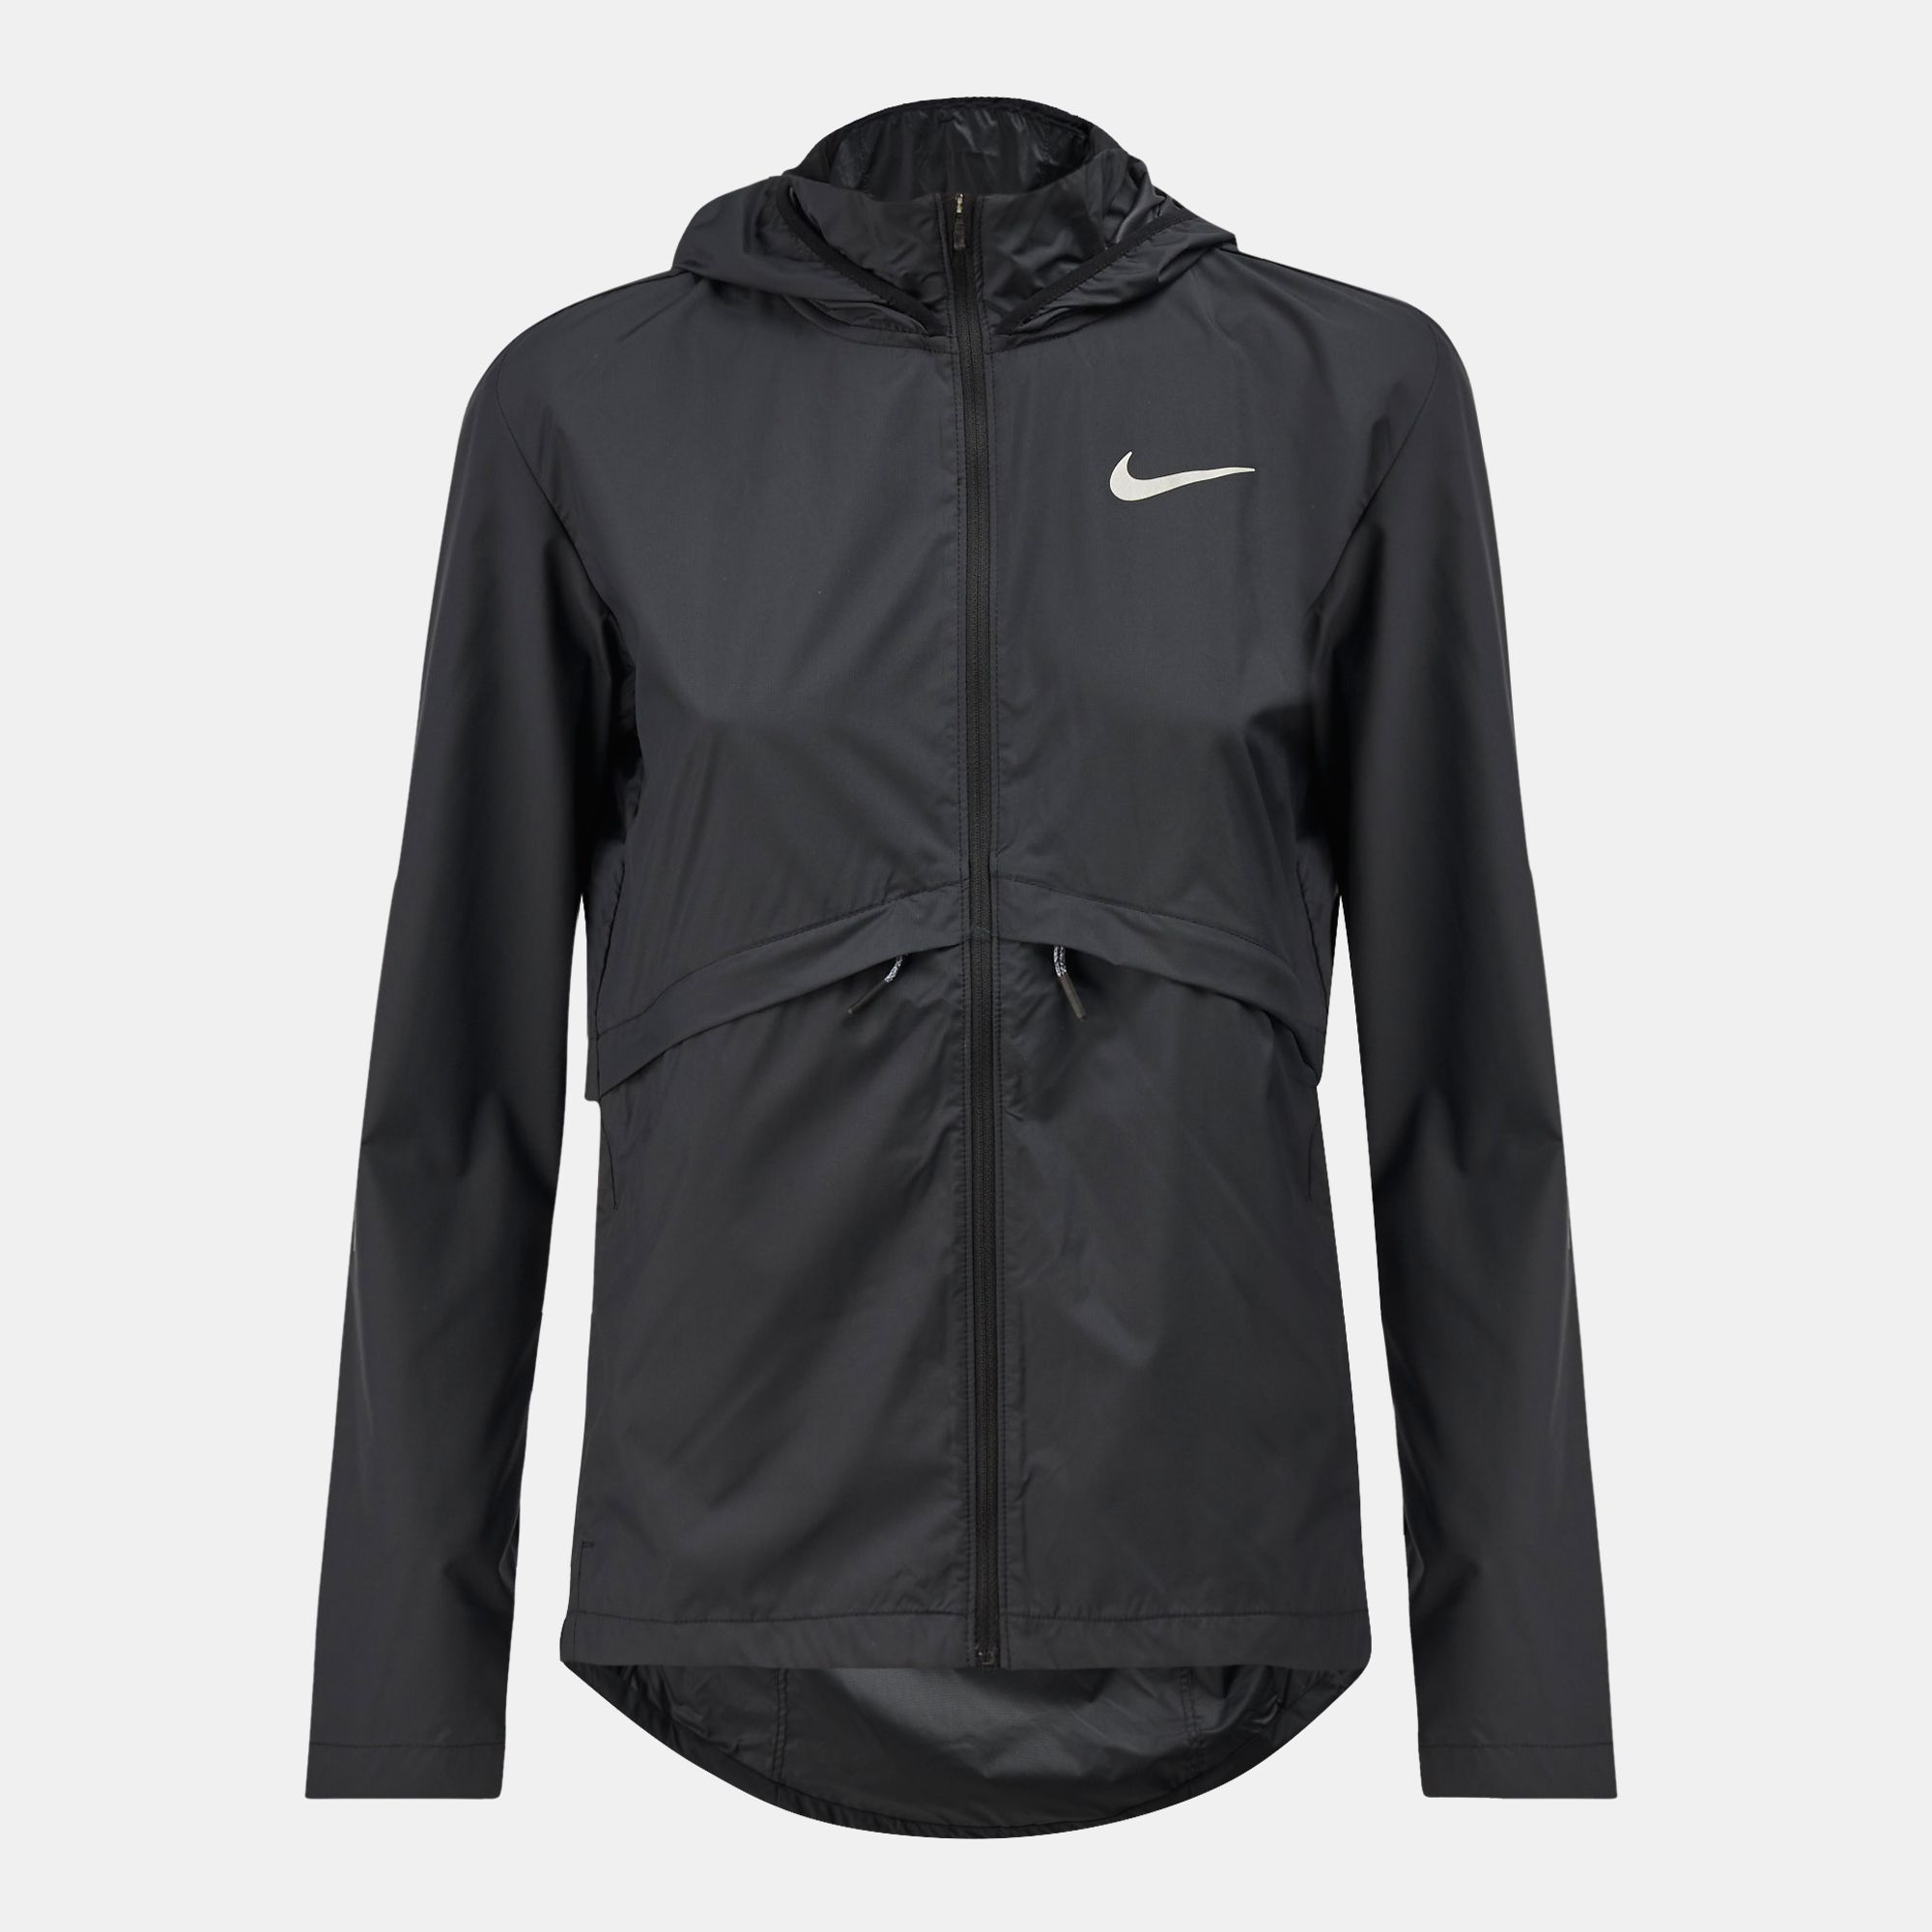 essential hooded running jacket nike